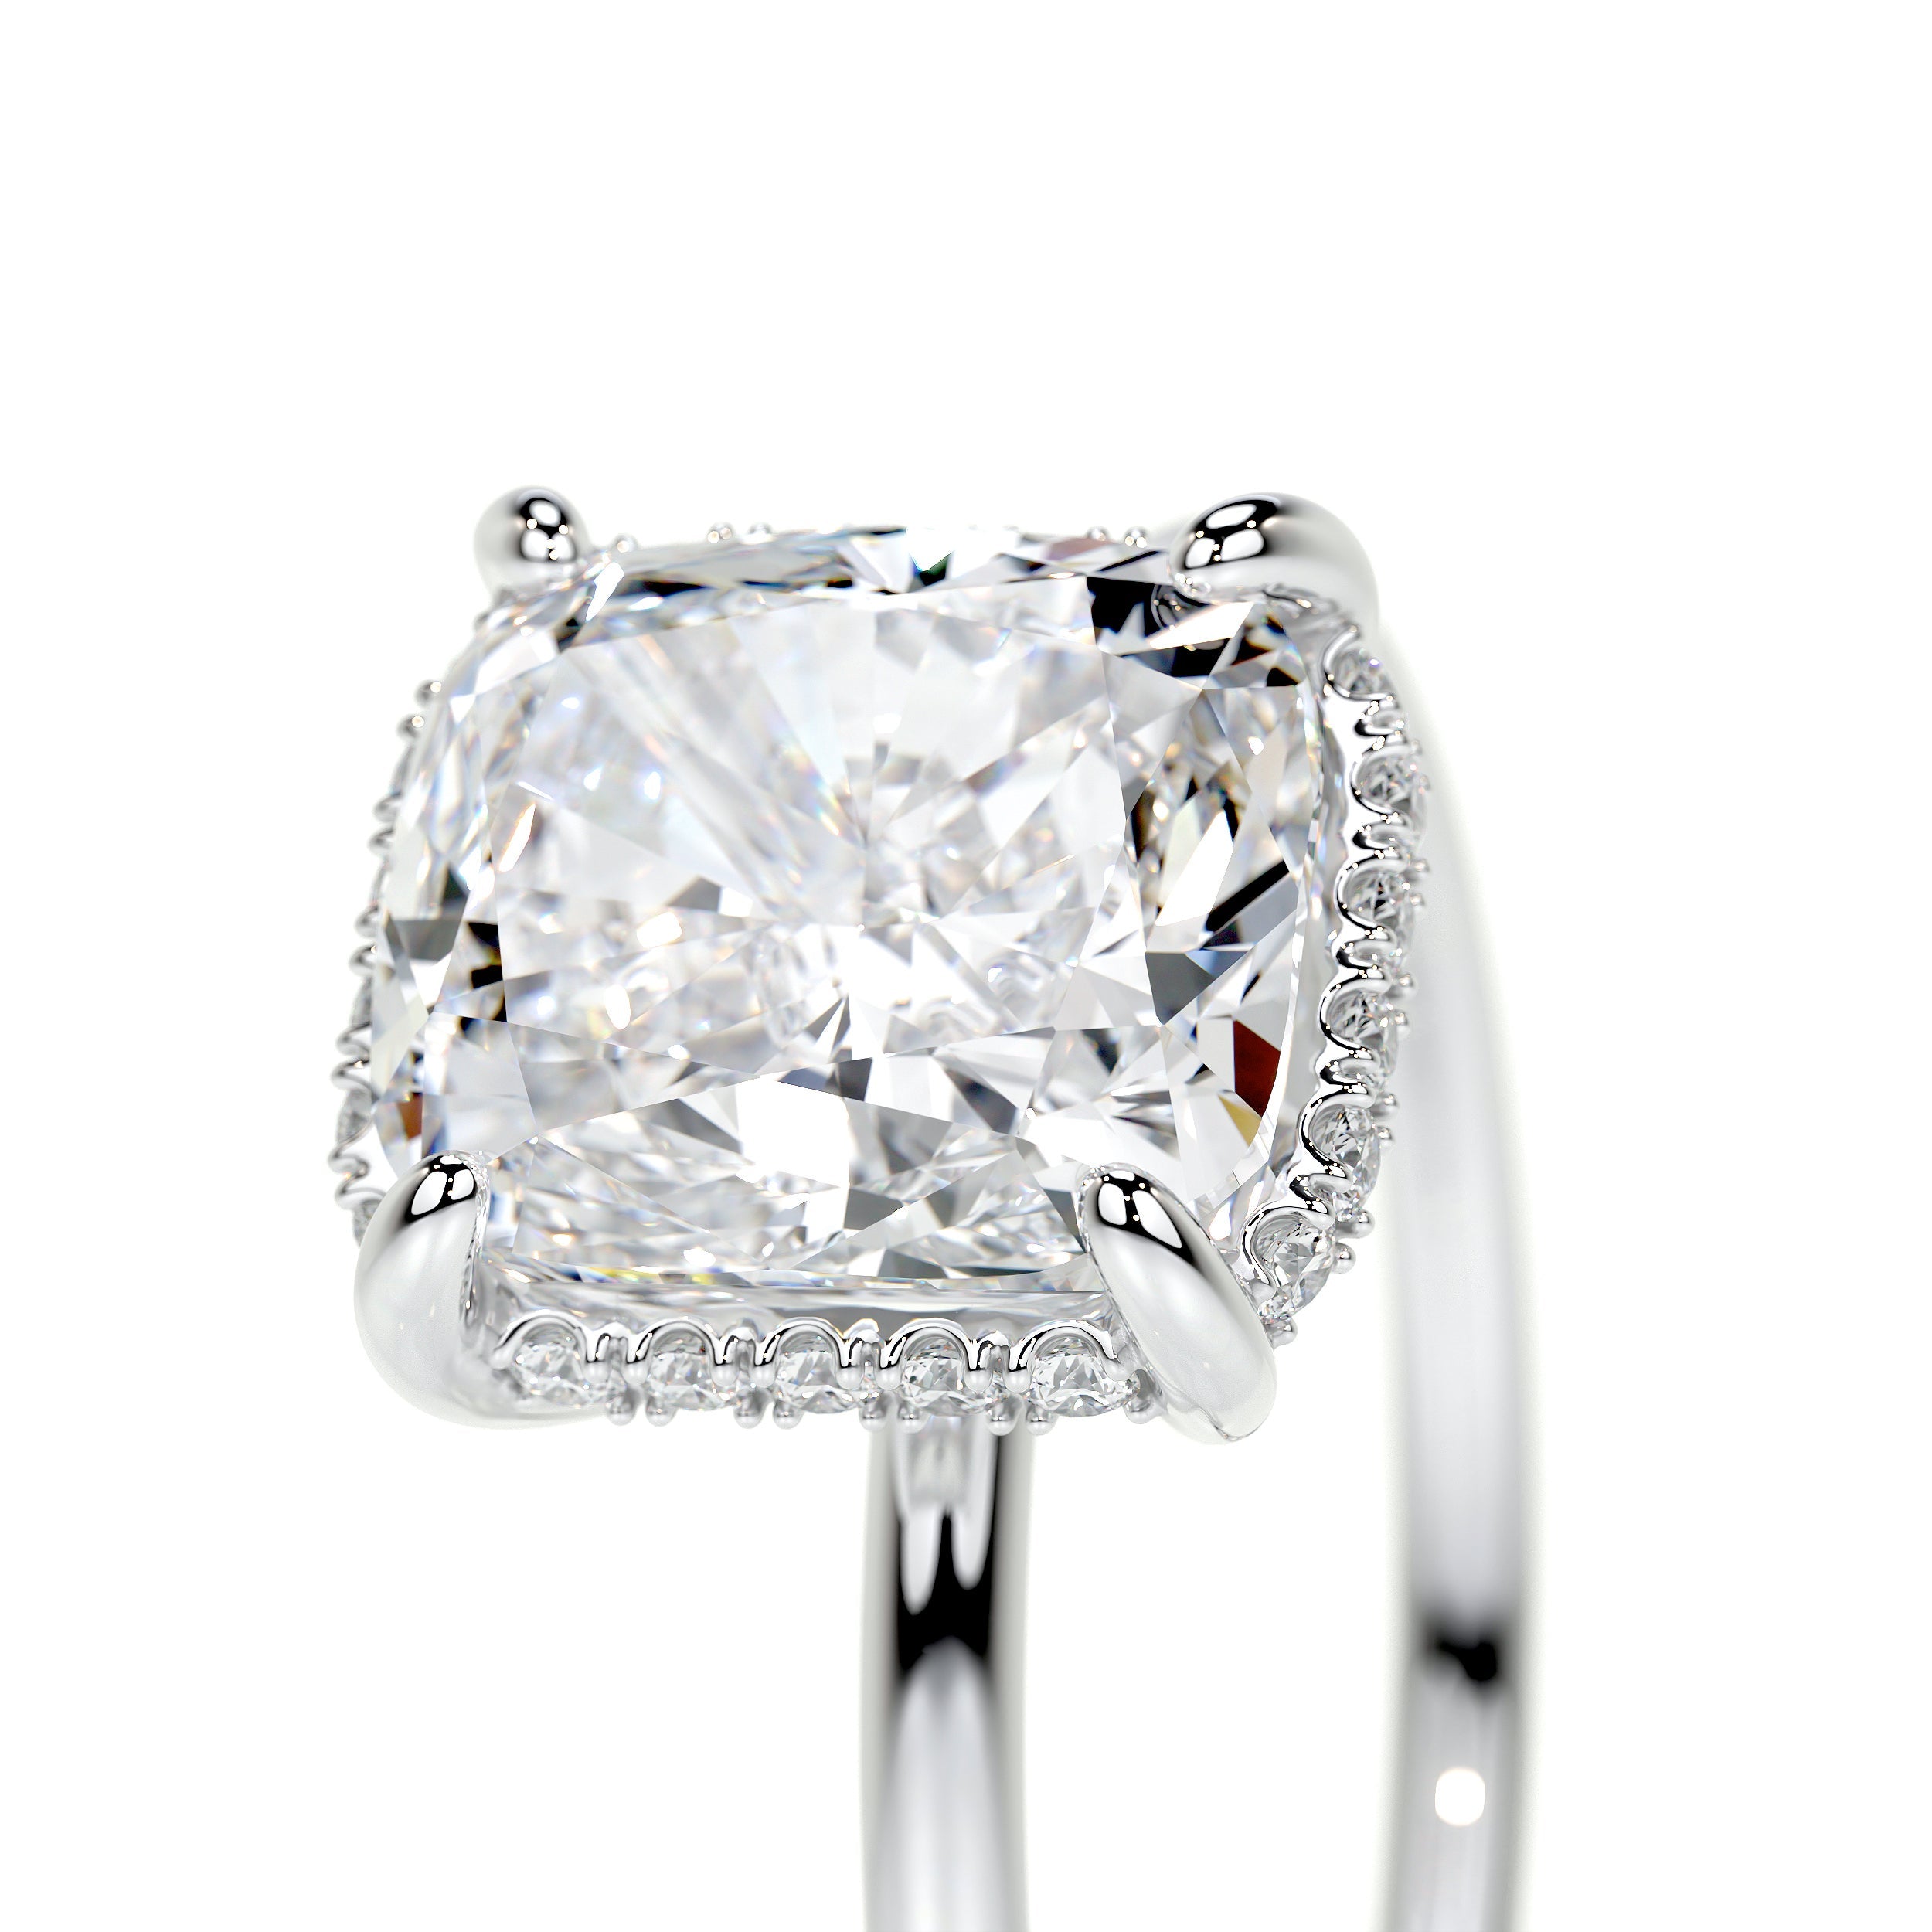 Priscilla Lab Grown Diamond Ring   (3.1 Carat) -Platinum